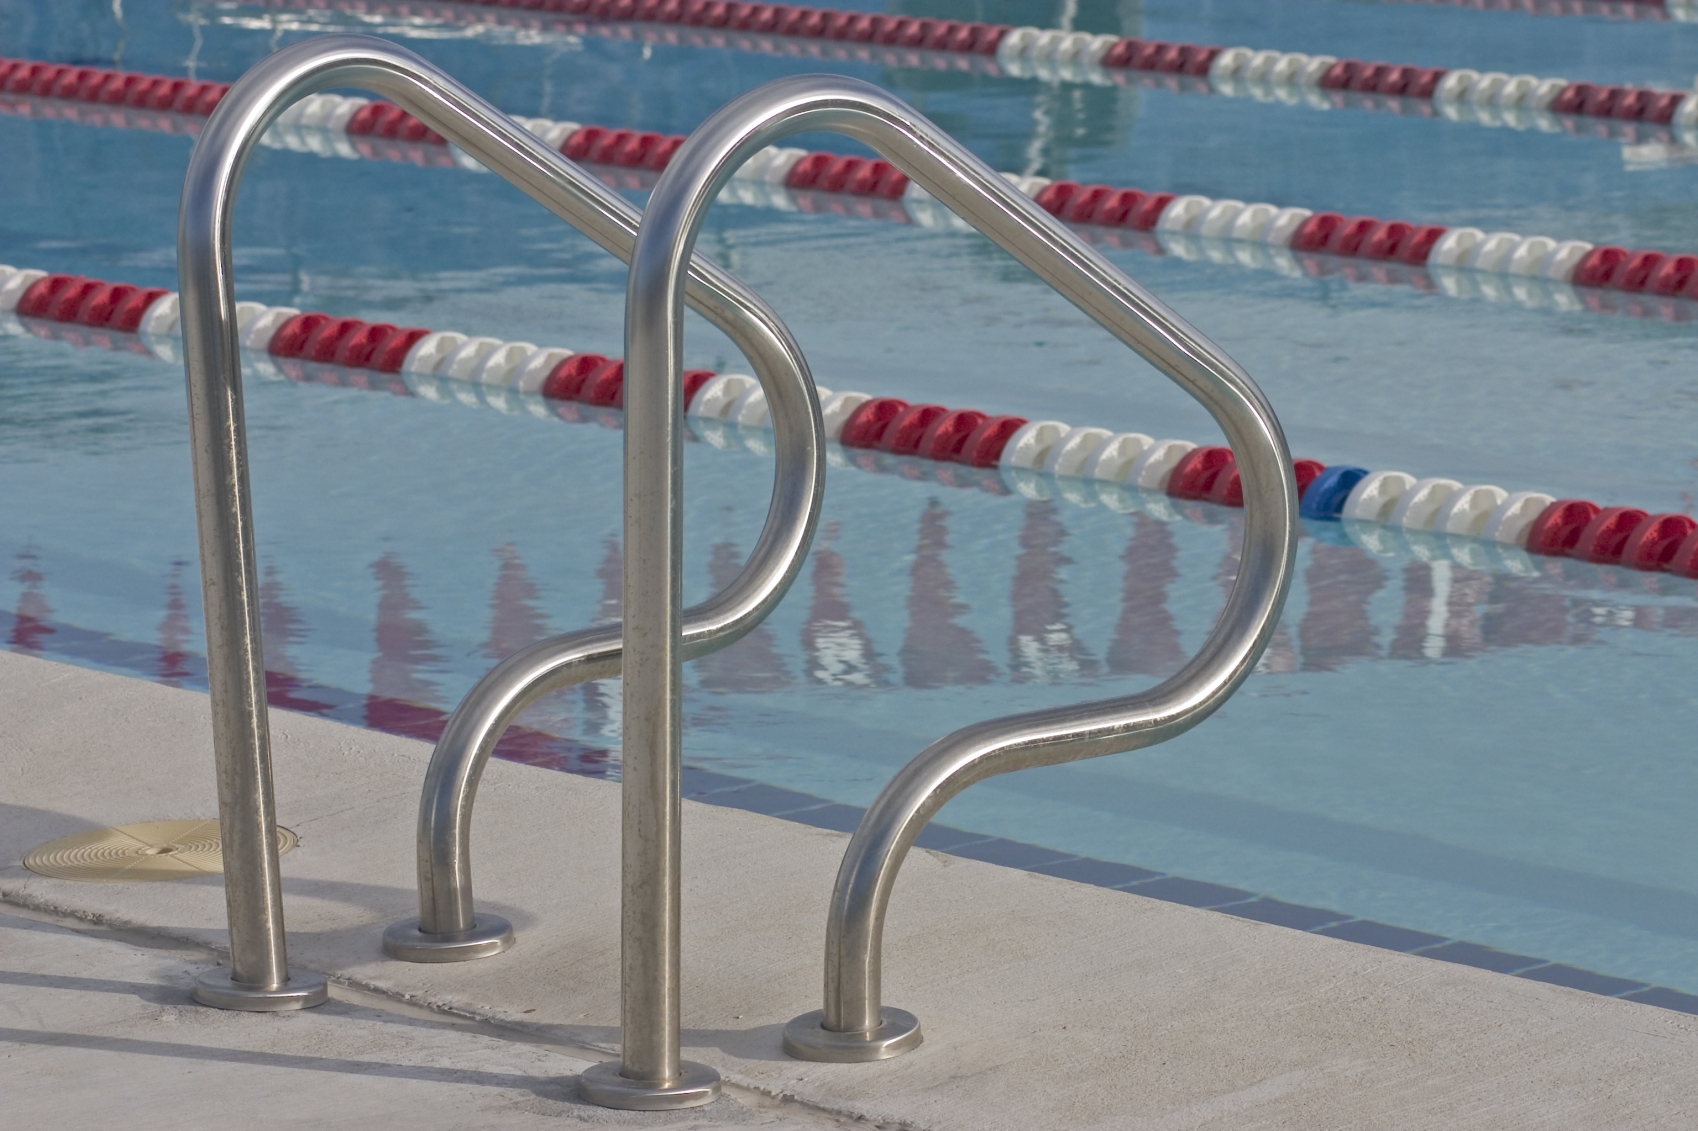 Zwemwaterregelgeving: wat is een ‘badwaterbassin’ en wat is ‘zwemmen’ en ‘baden’?